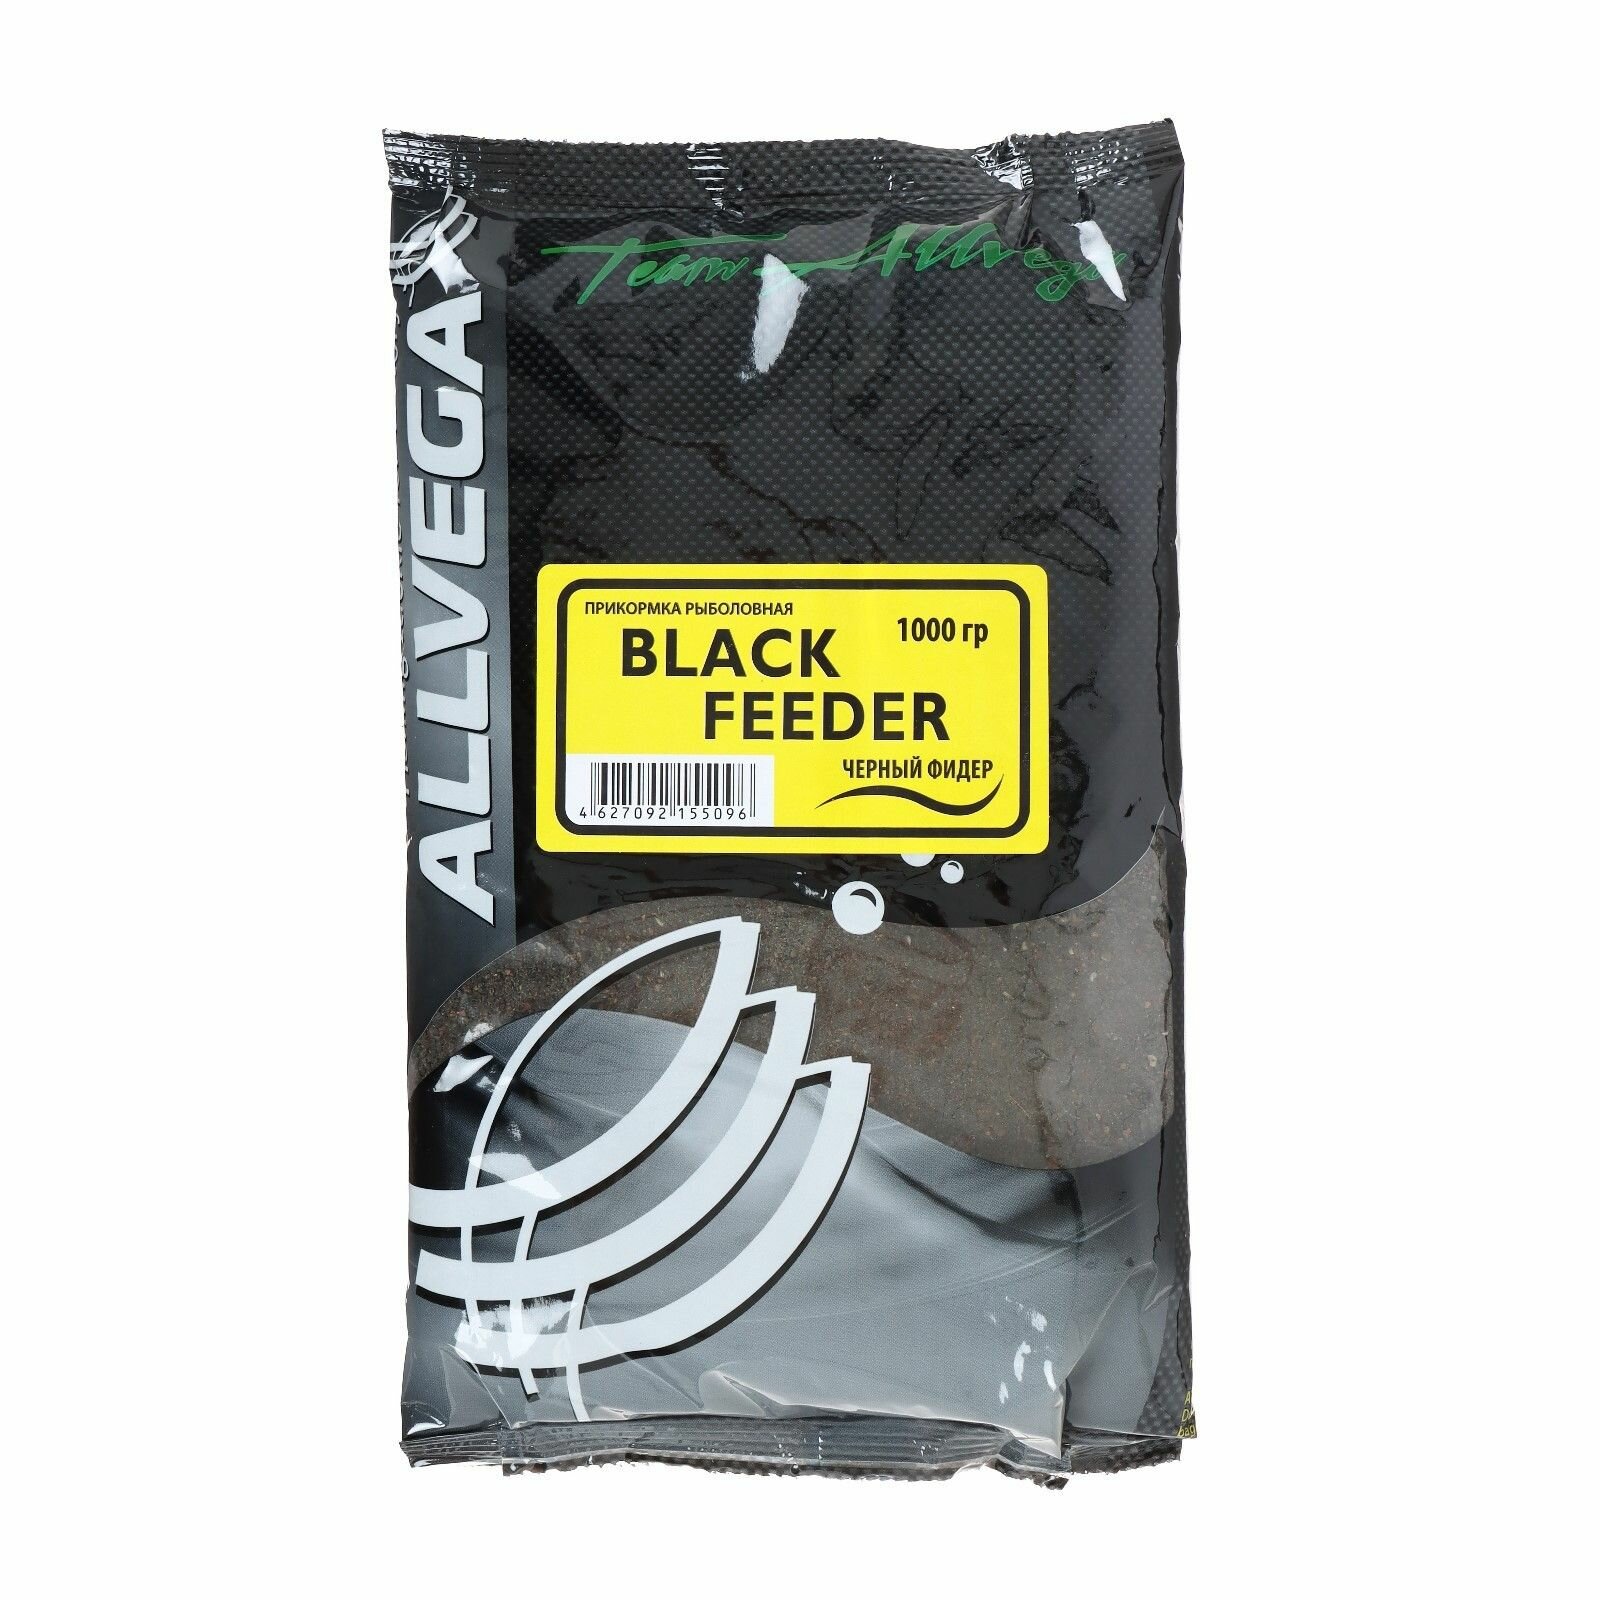 Прикормка ALLVEGA "Team Allvega Black Feeder" 1 кг (черный фидер) 2 штуки